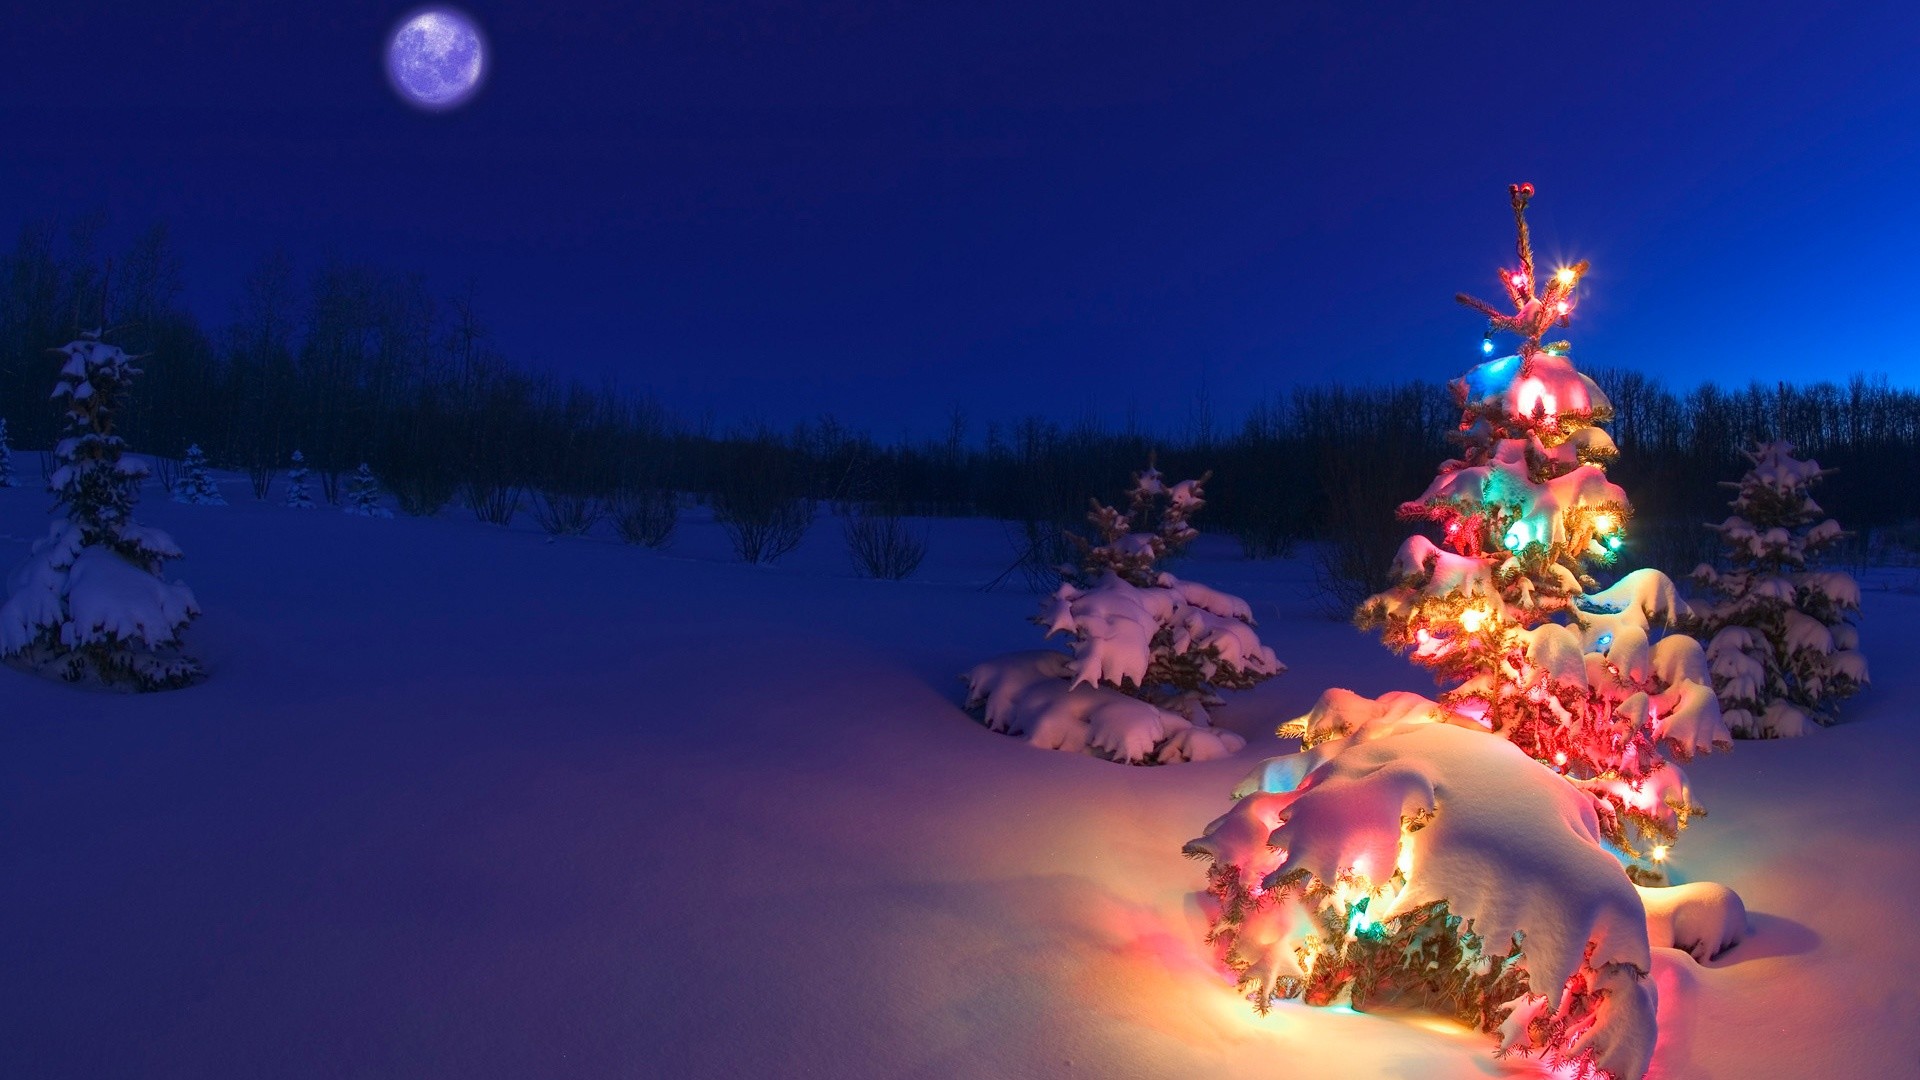 tapete weihnachten,natur,weihnachtsbaum,winter,himmel,weihnachten